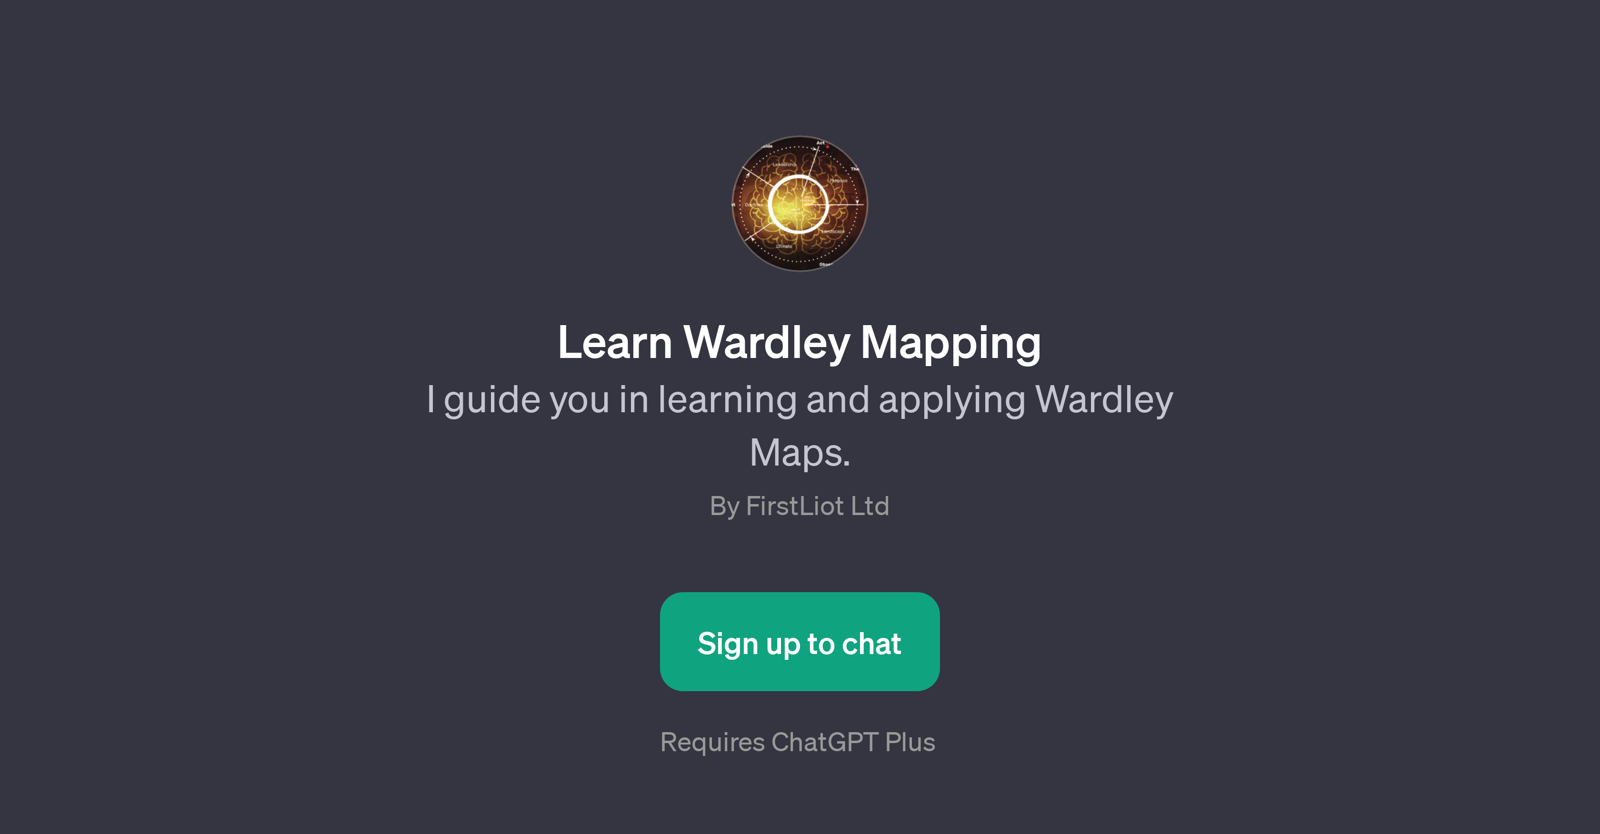 Learn Wardley Mapping website